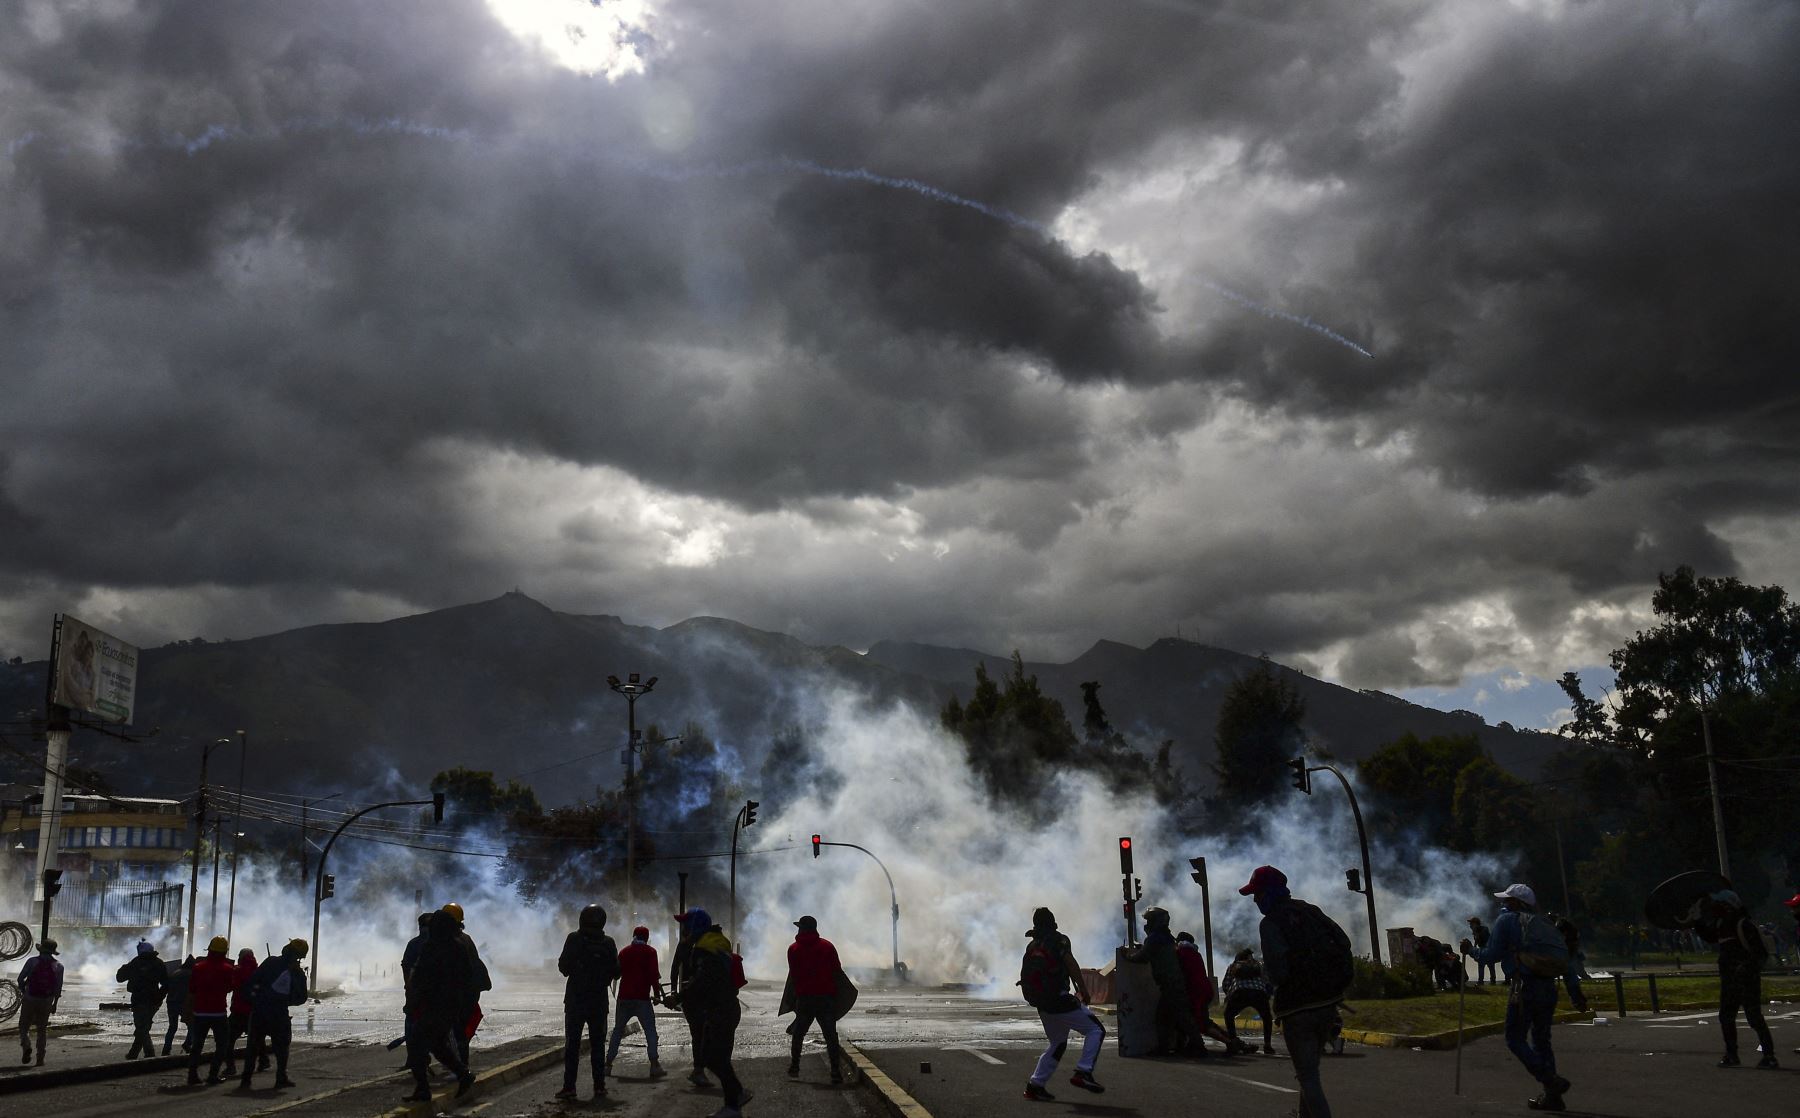 Manifestantes chocan con la policía en el Parque Arbolito en Quito, en el marco de las protestas lideradas por indígenas ecuatorianos contra el gobierno. Foto: AFP